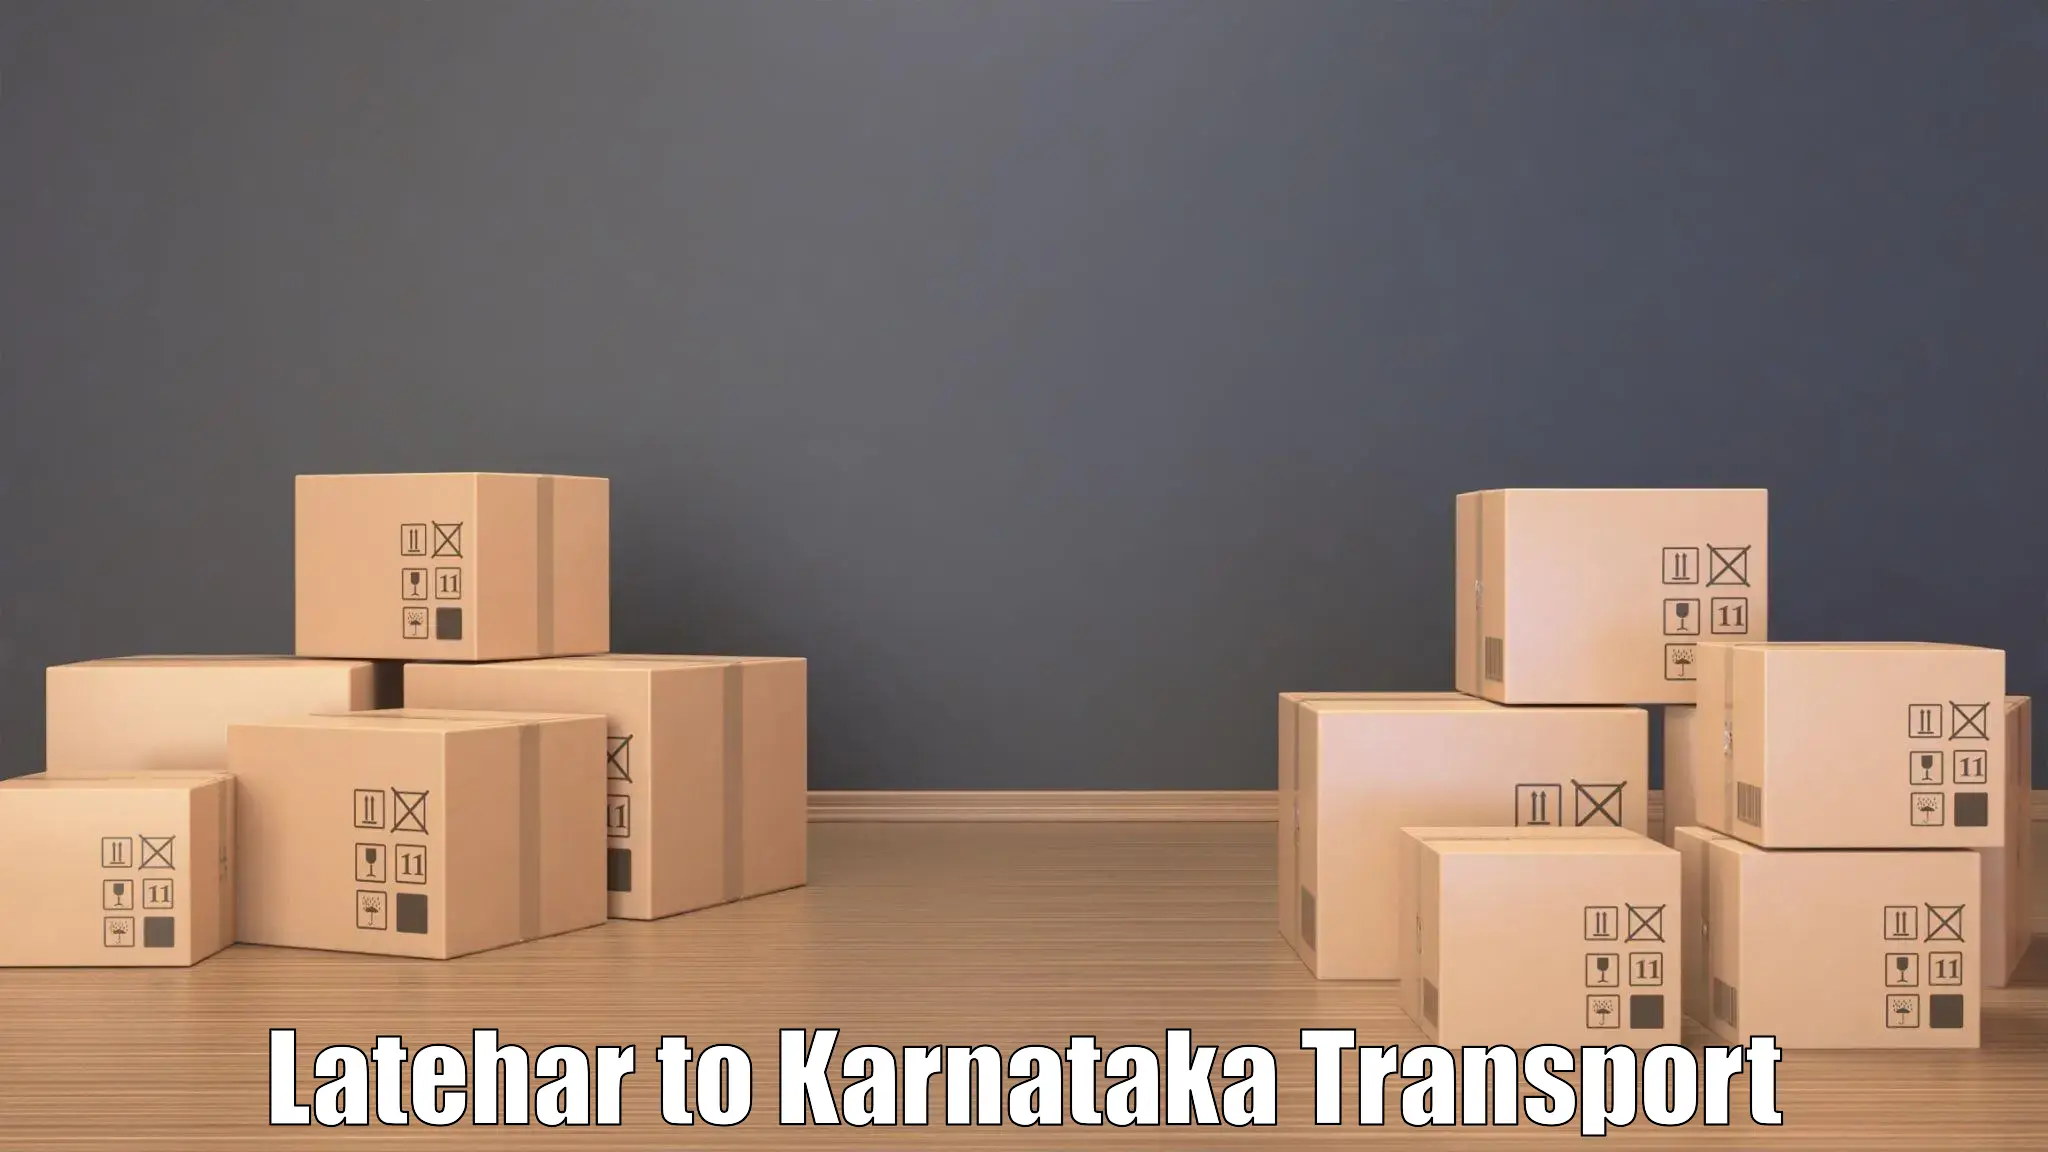 India truck logistics services Latehar to Sindagi